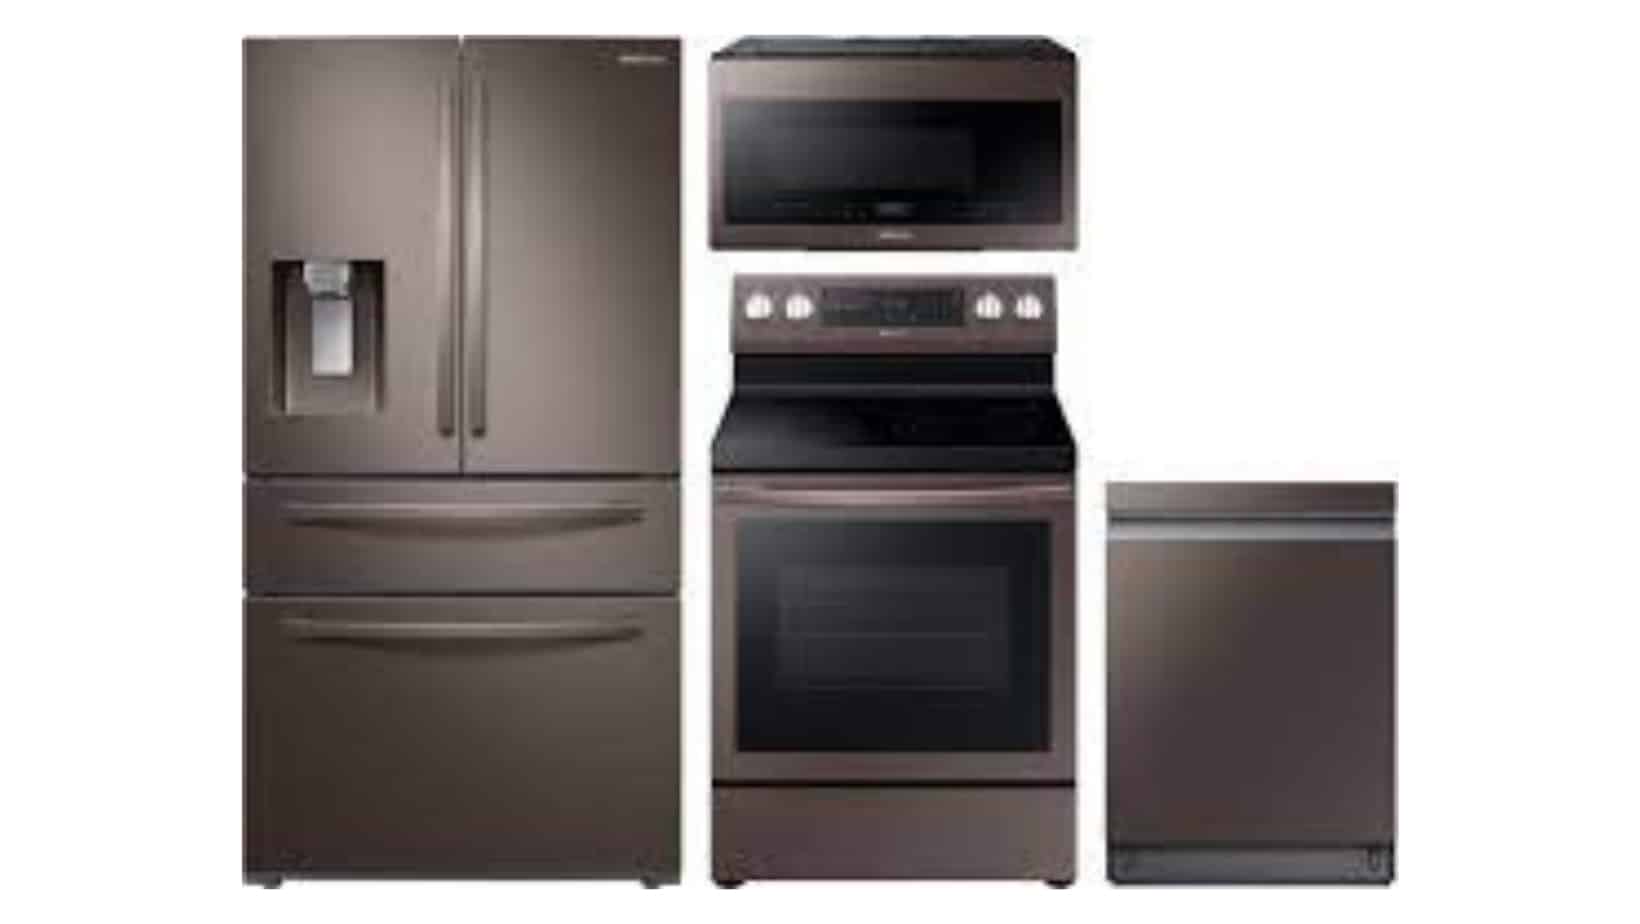 Samsung 4-Piece Kitchen Appliance Package